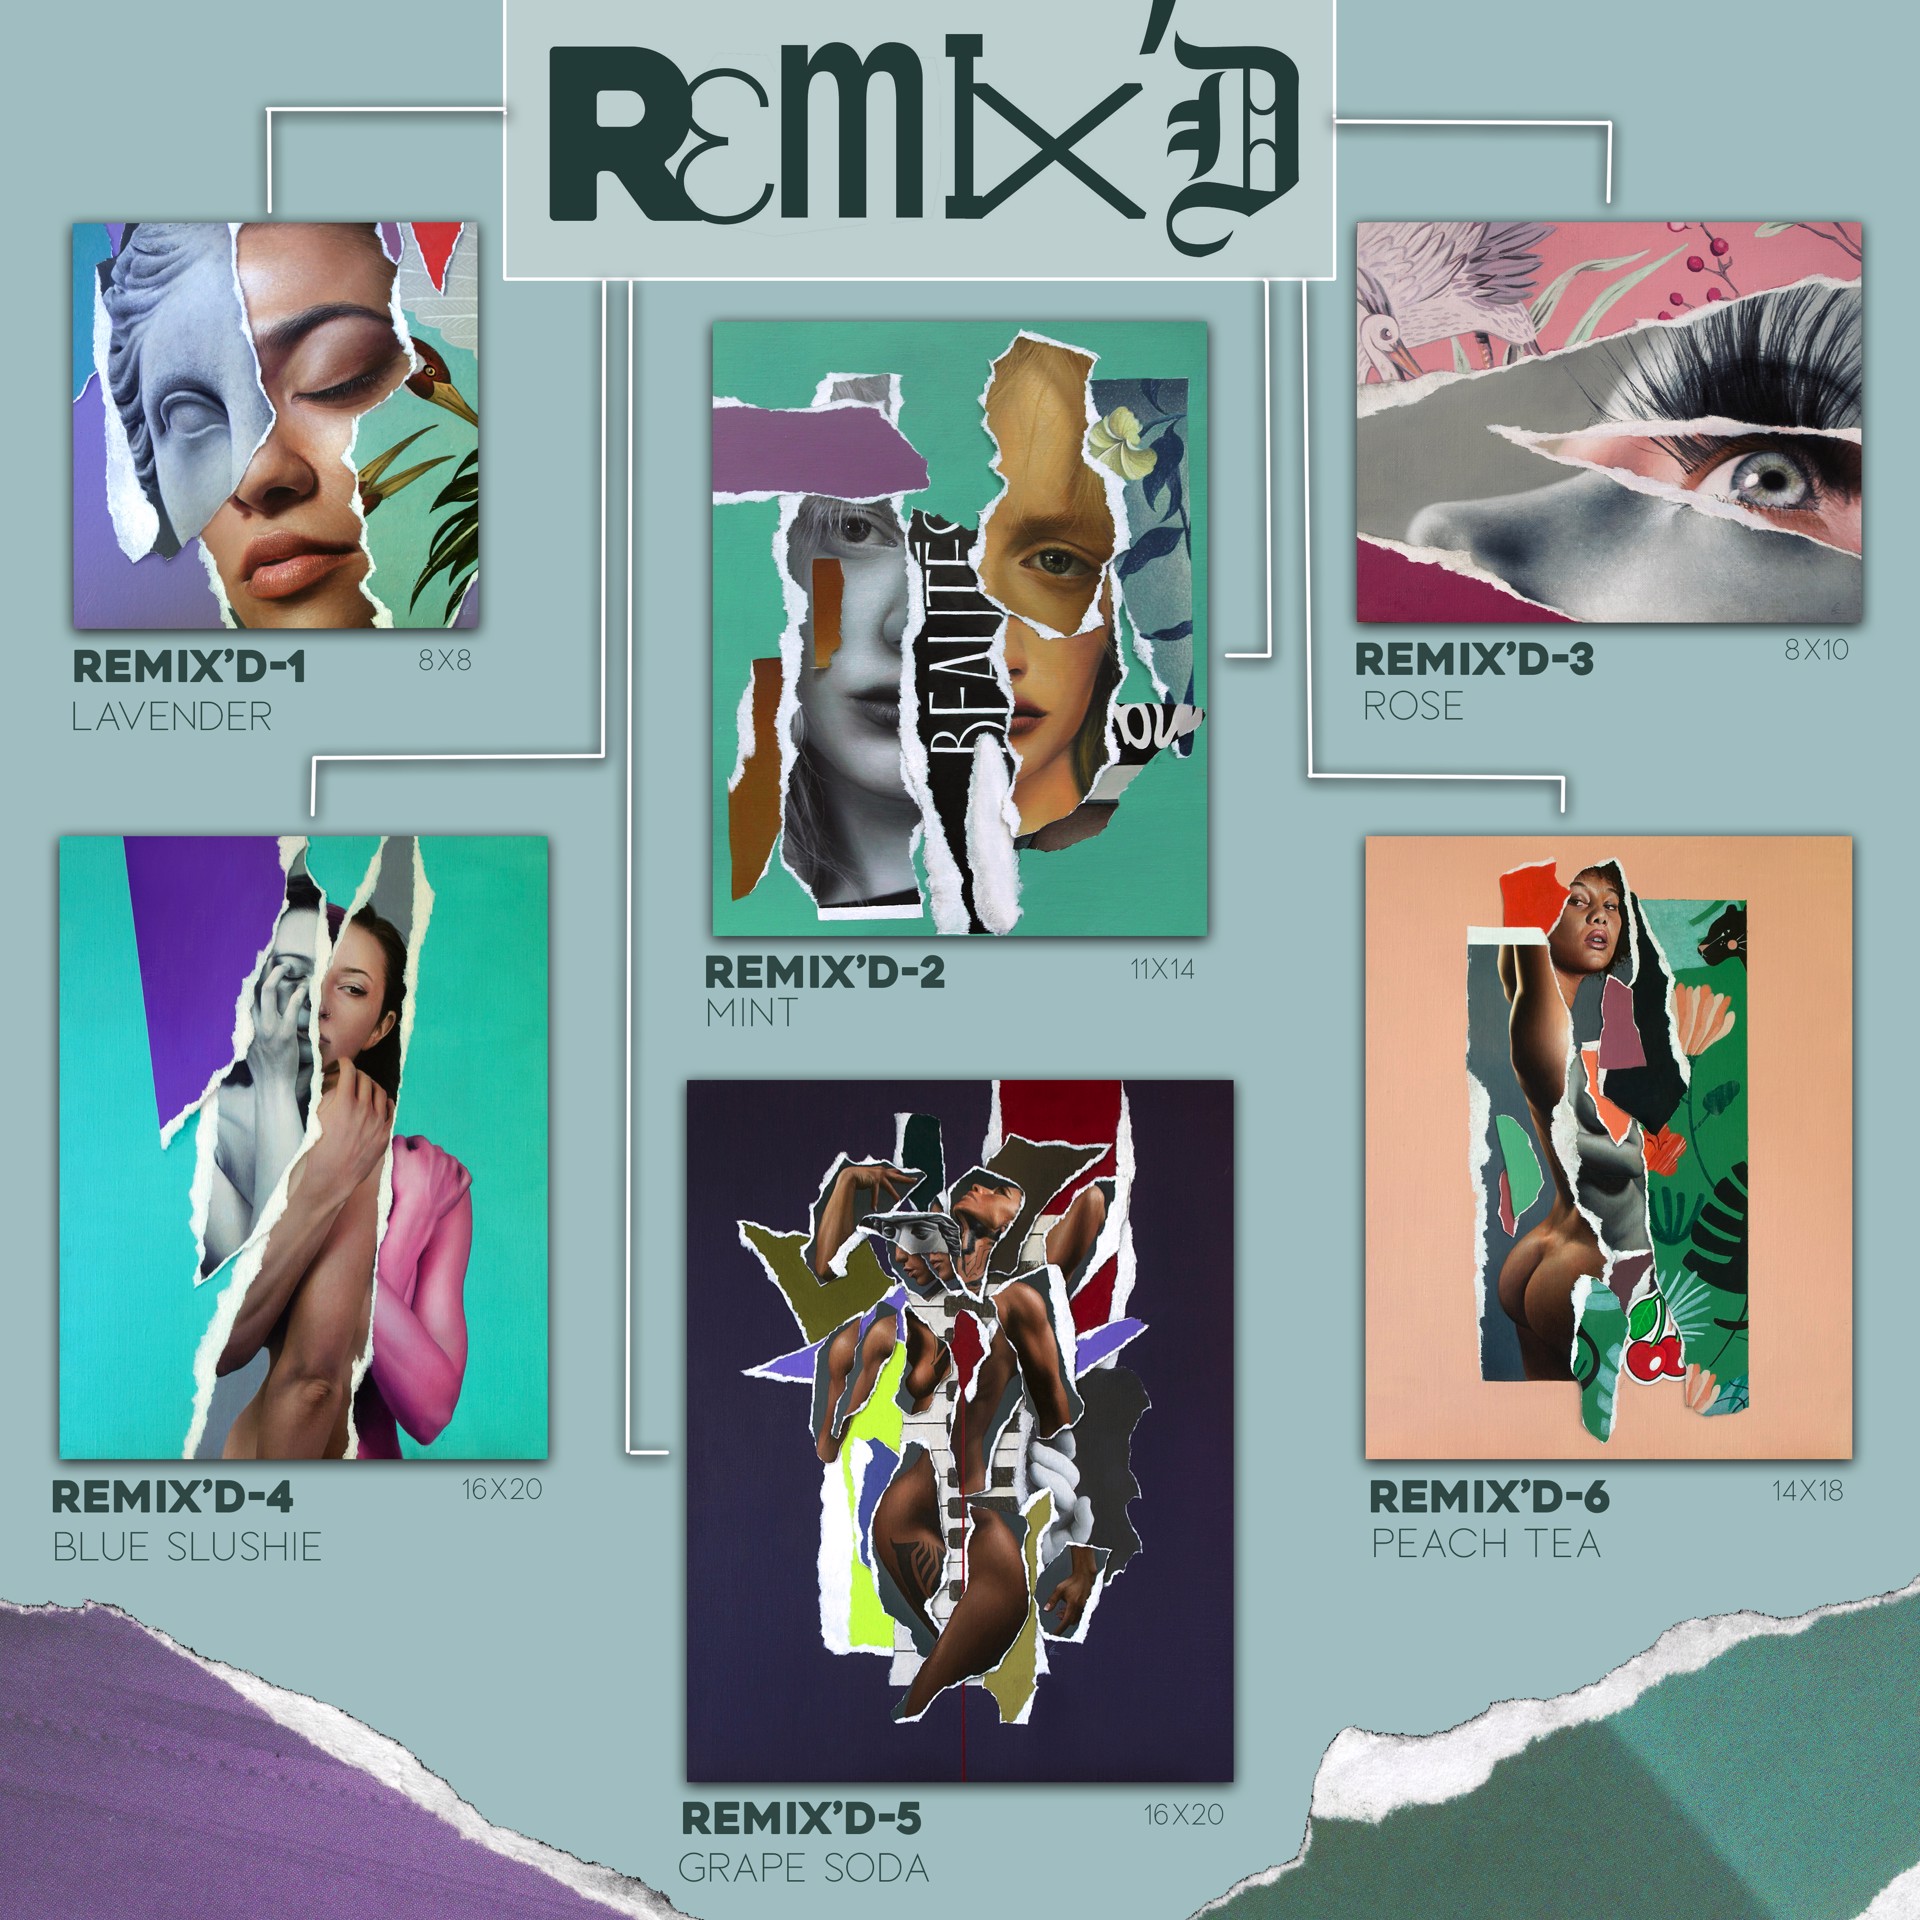 Remix’D-2 (Mint) by Grant Gilsdorf